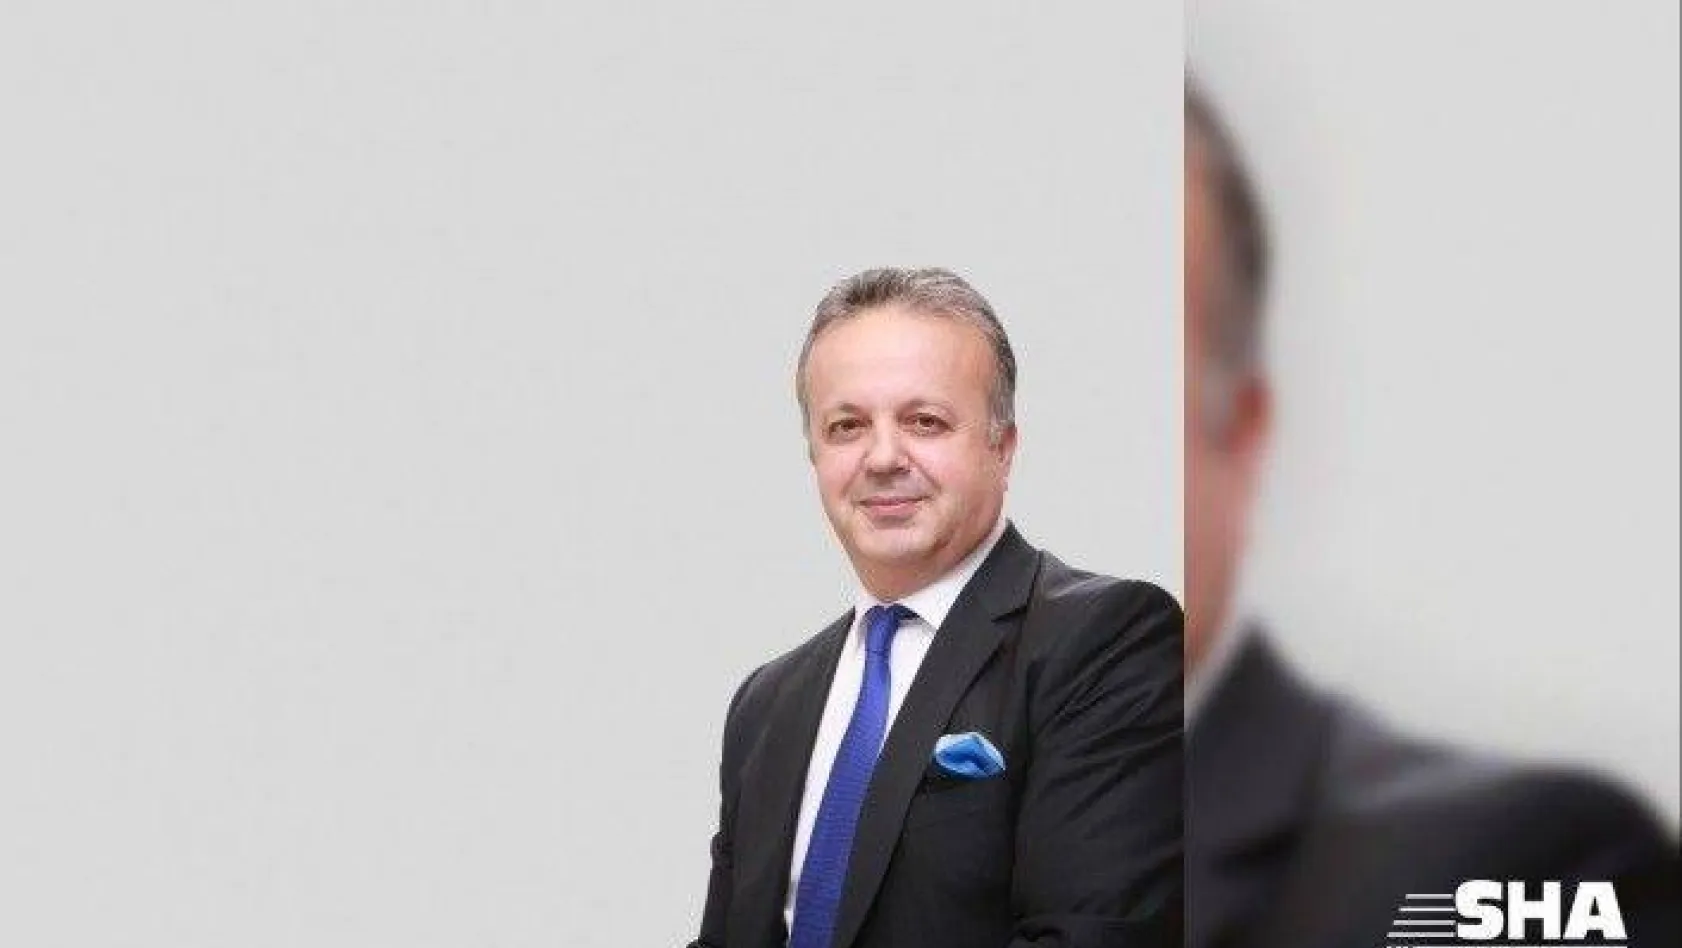 TİM Başkanı İsmail Gülle: "İhracata büyük destek"